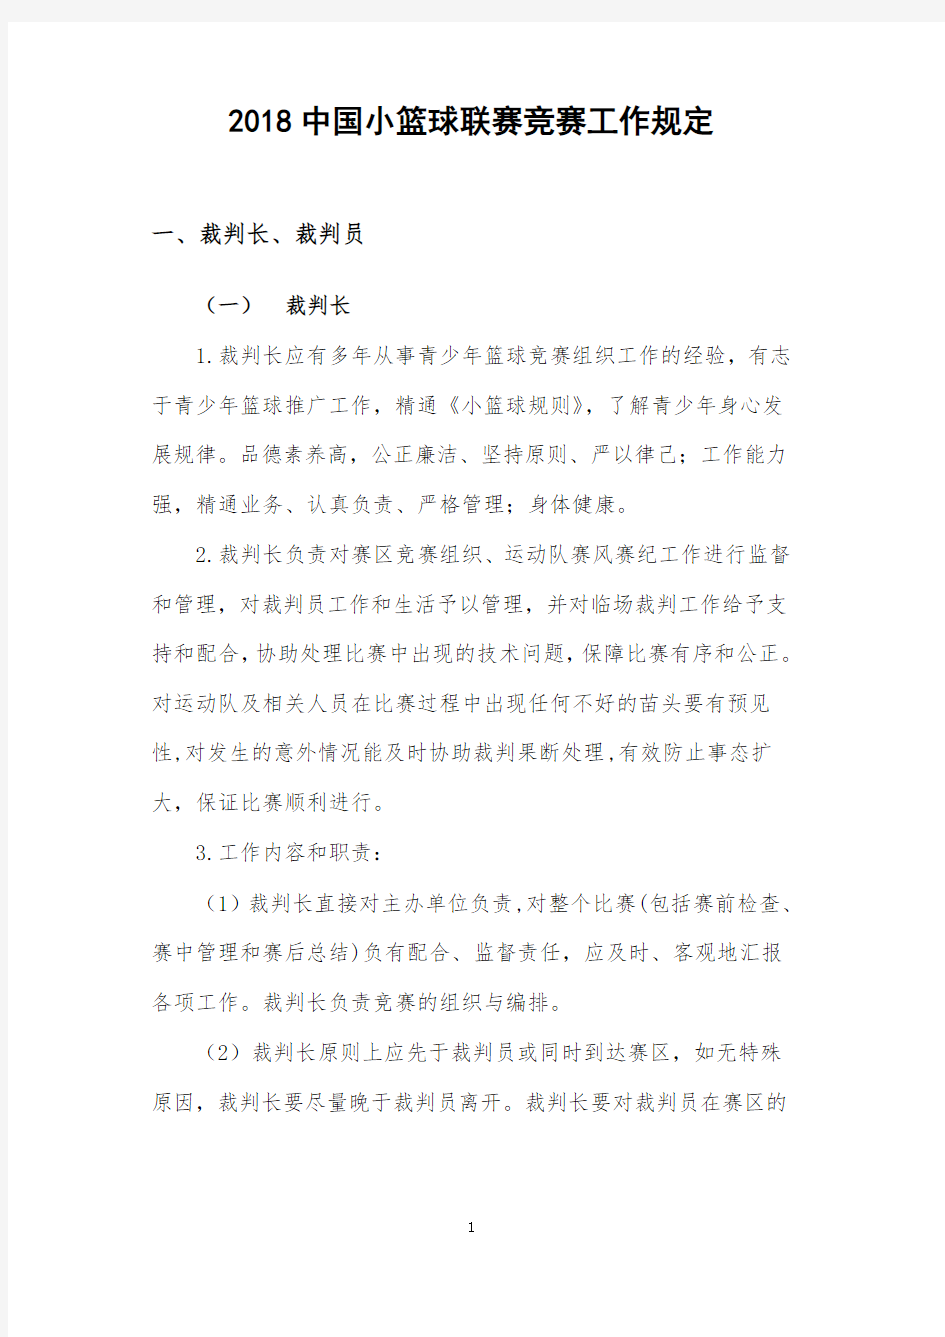 中国小篮球联赛竞赛工作规定